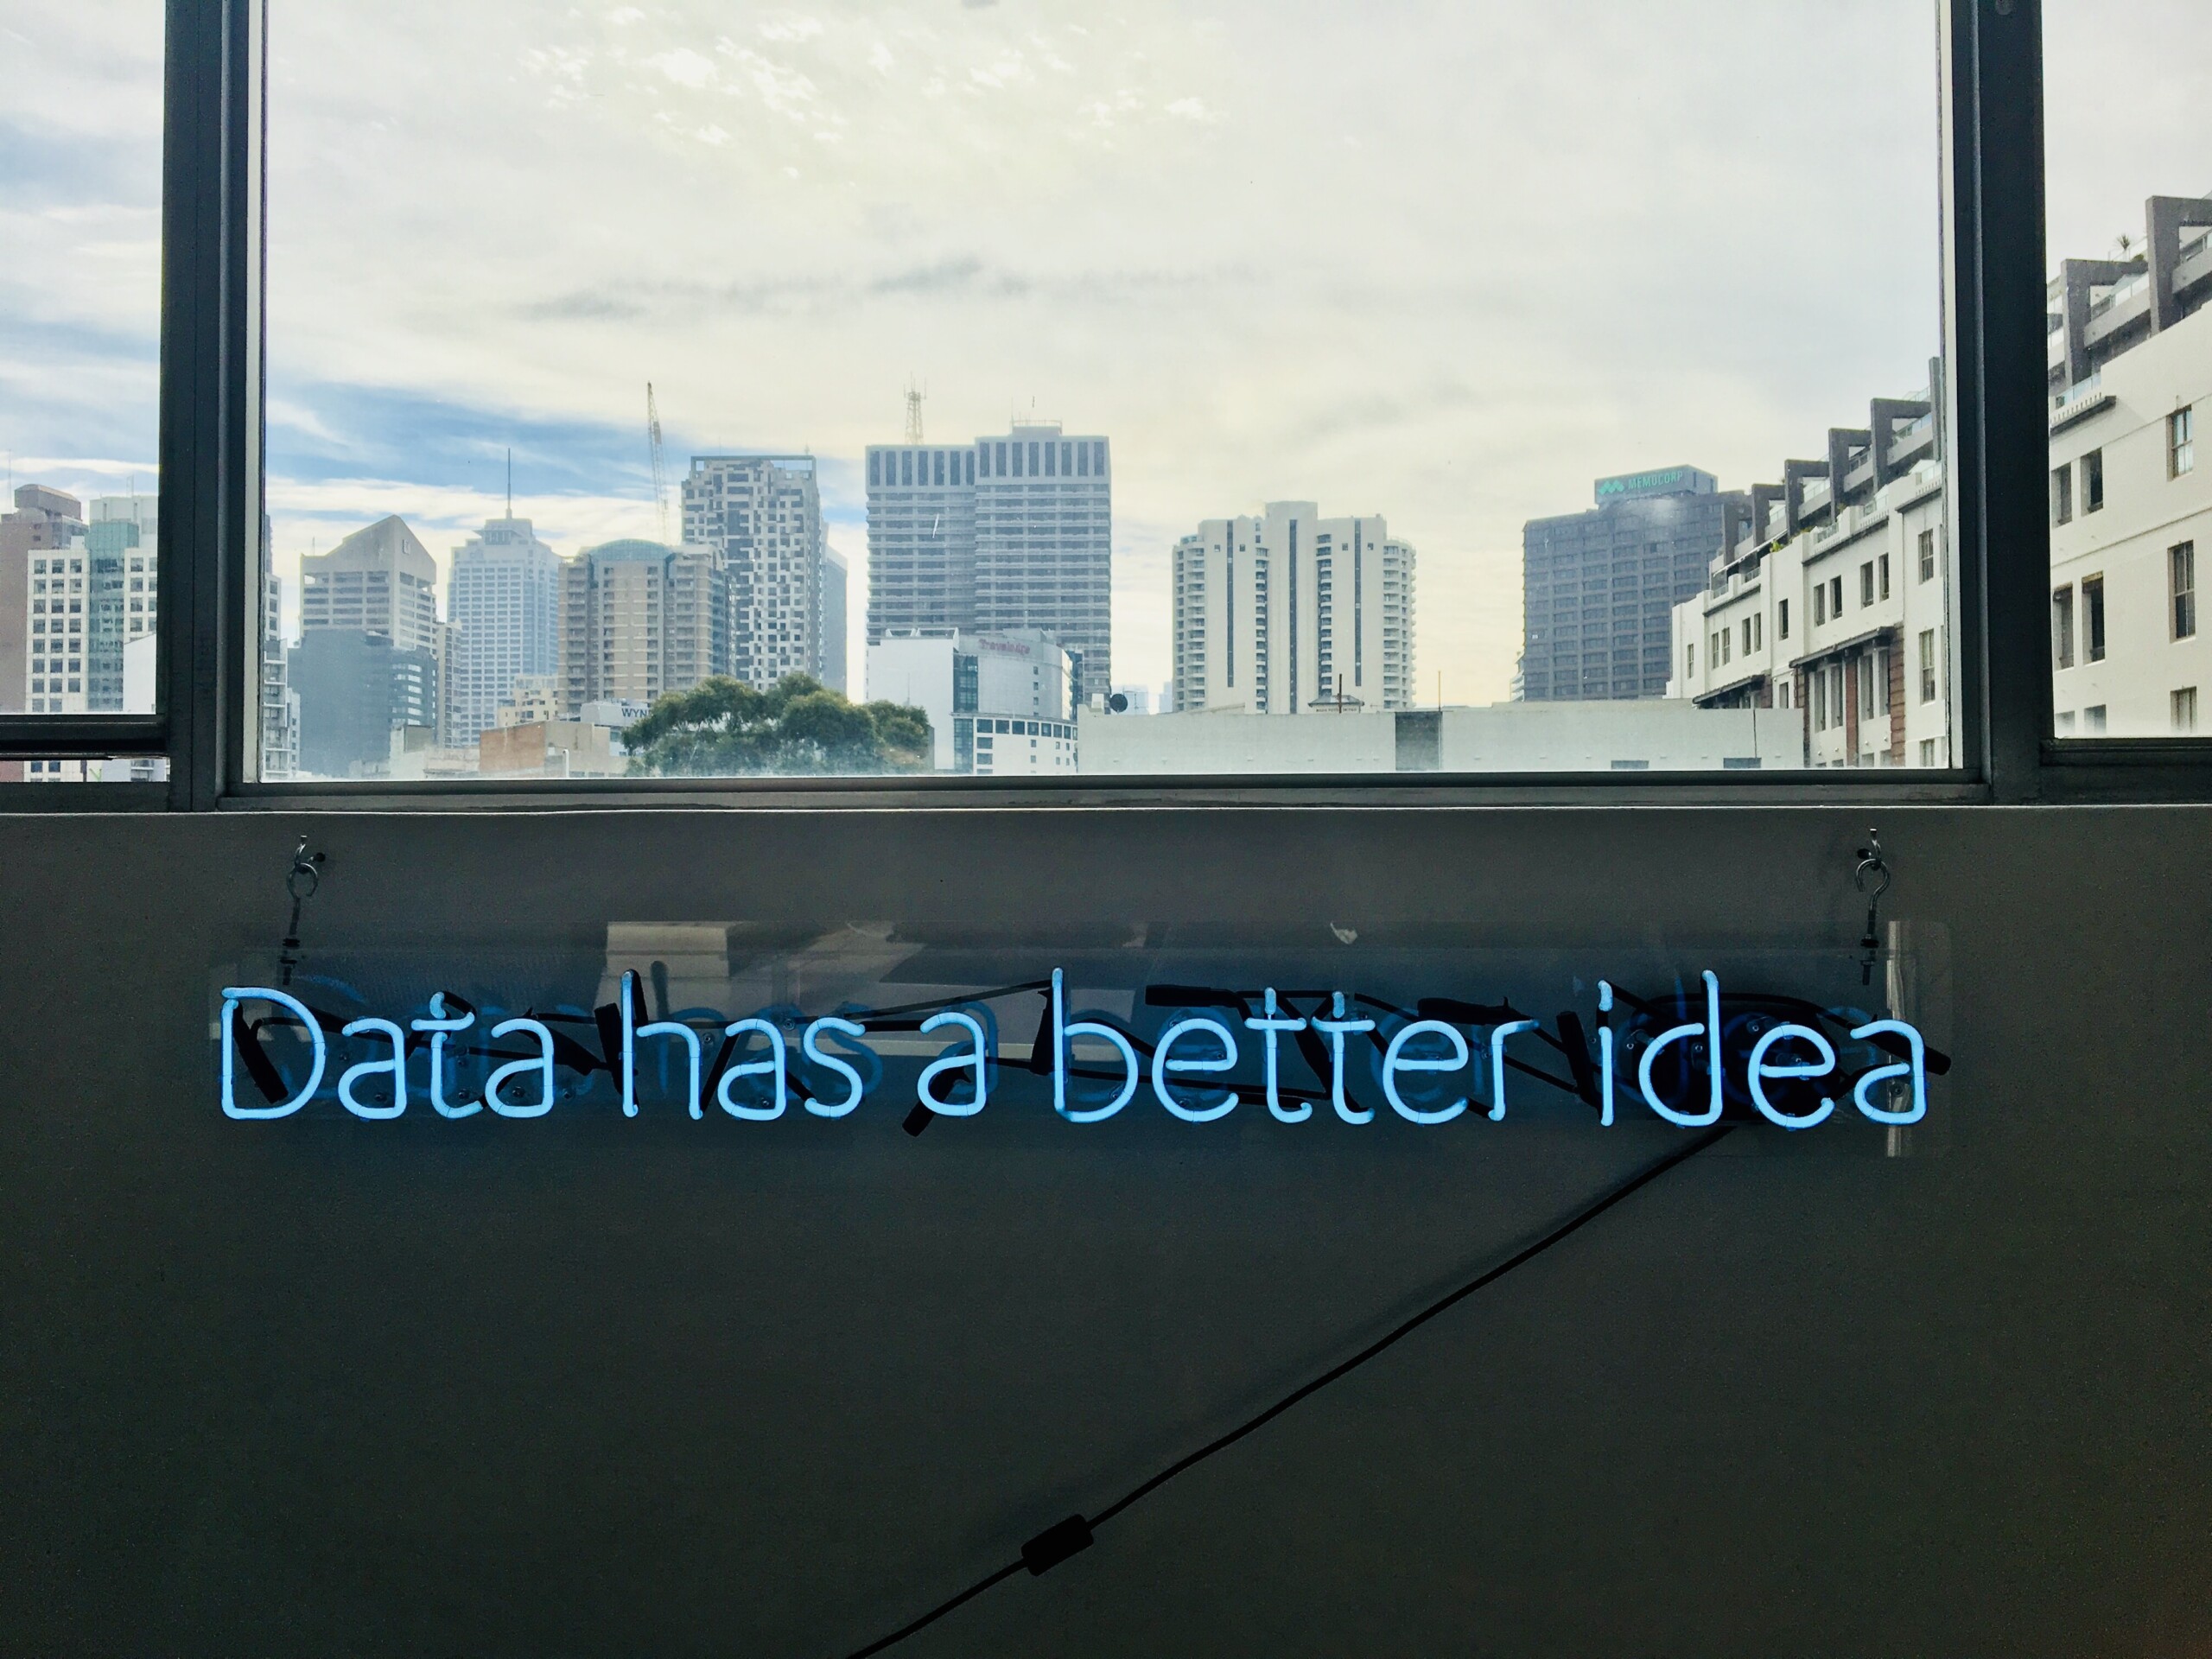 Análisis de datos: "Data has a better idea"